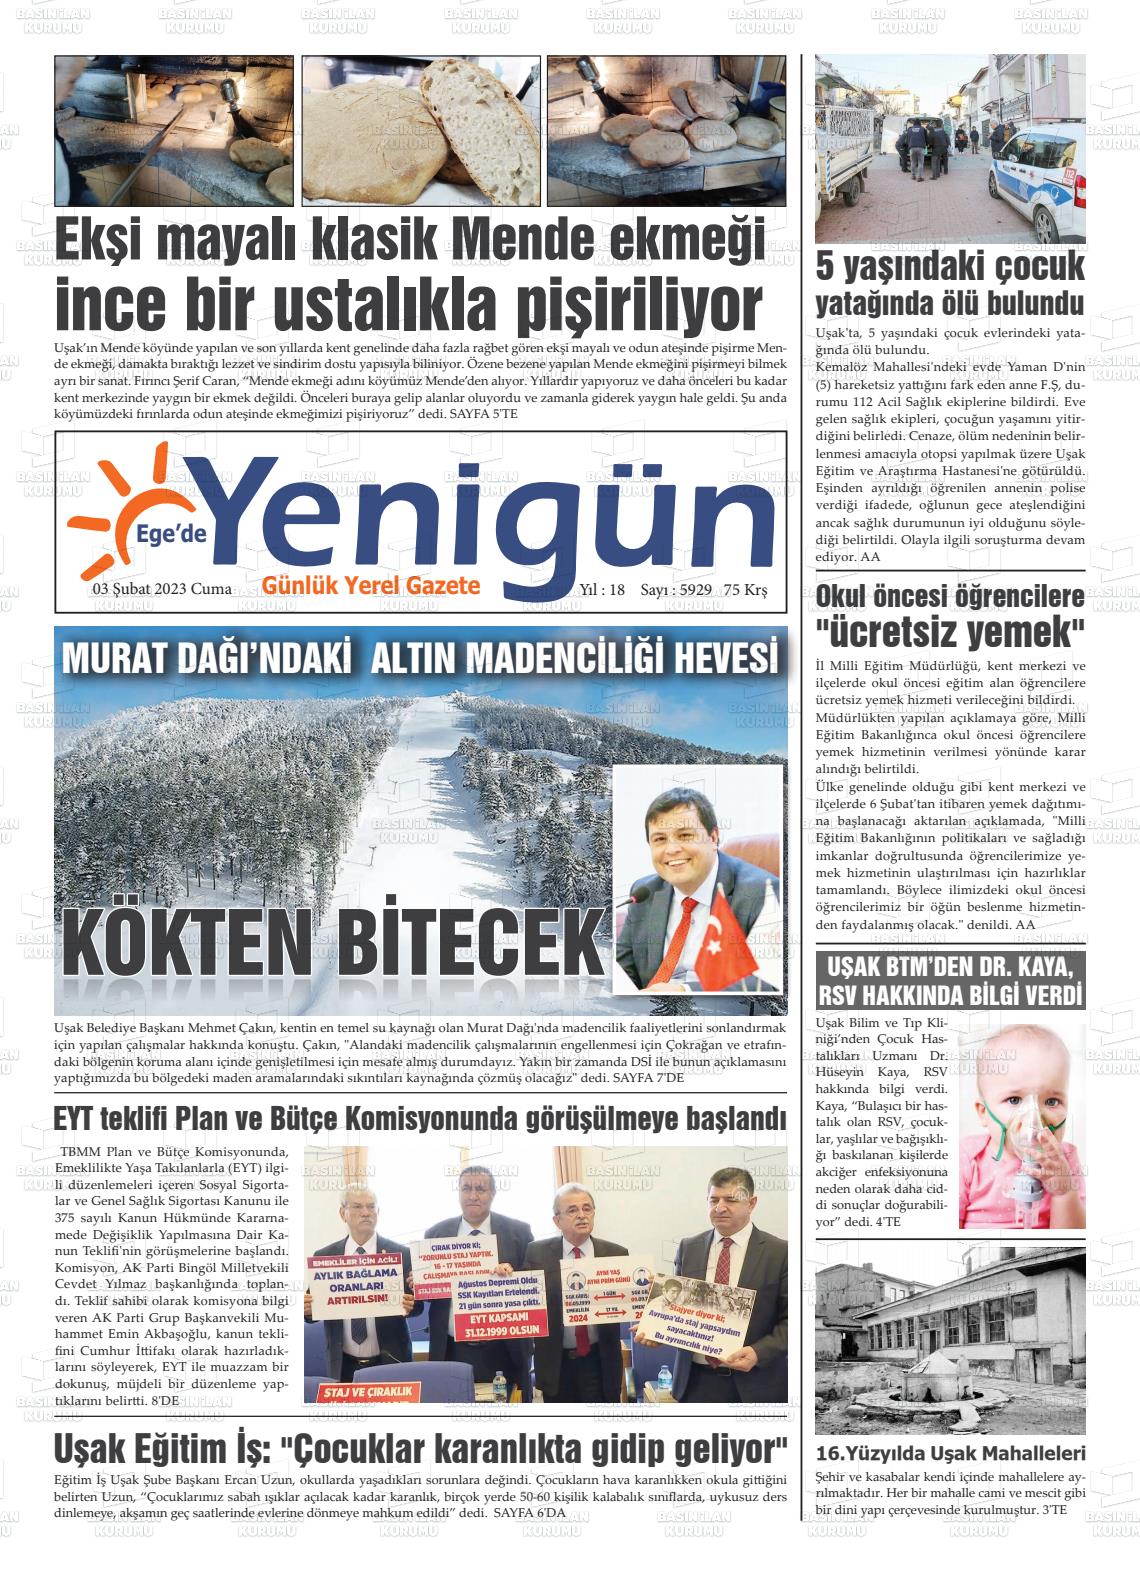 03 Şubat 2023 EGE'DE YENİGÜN GAZETESİ Gazete Manşeti